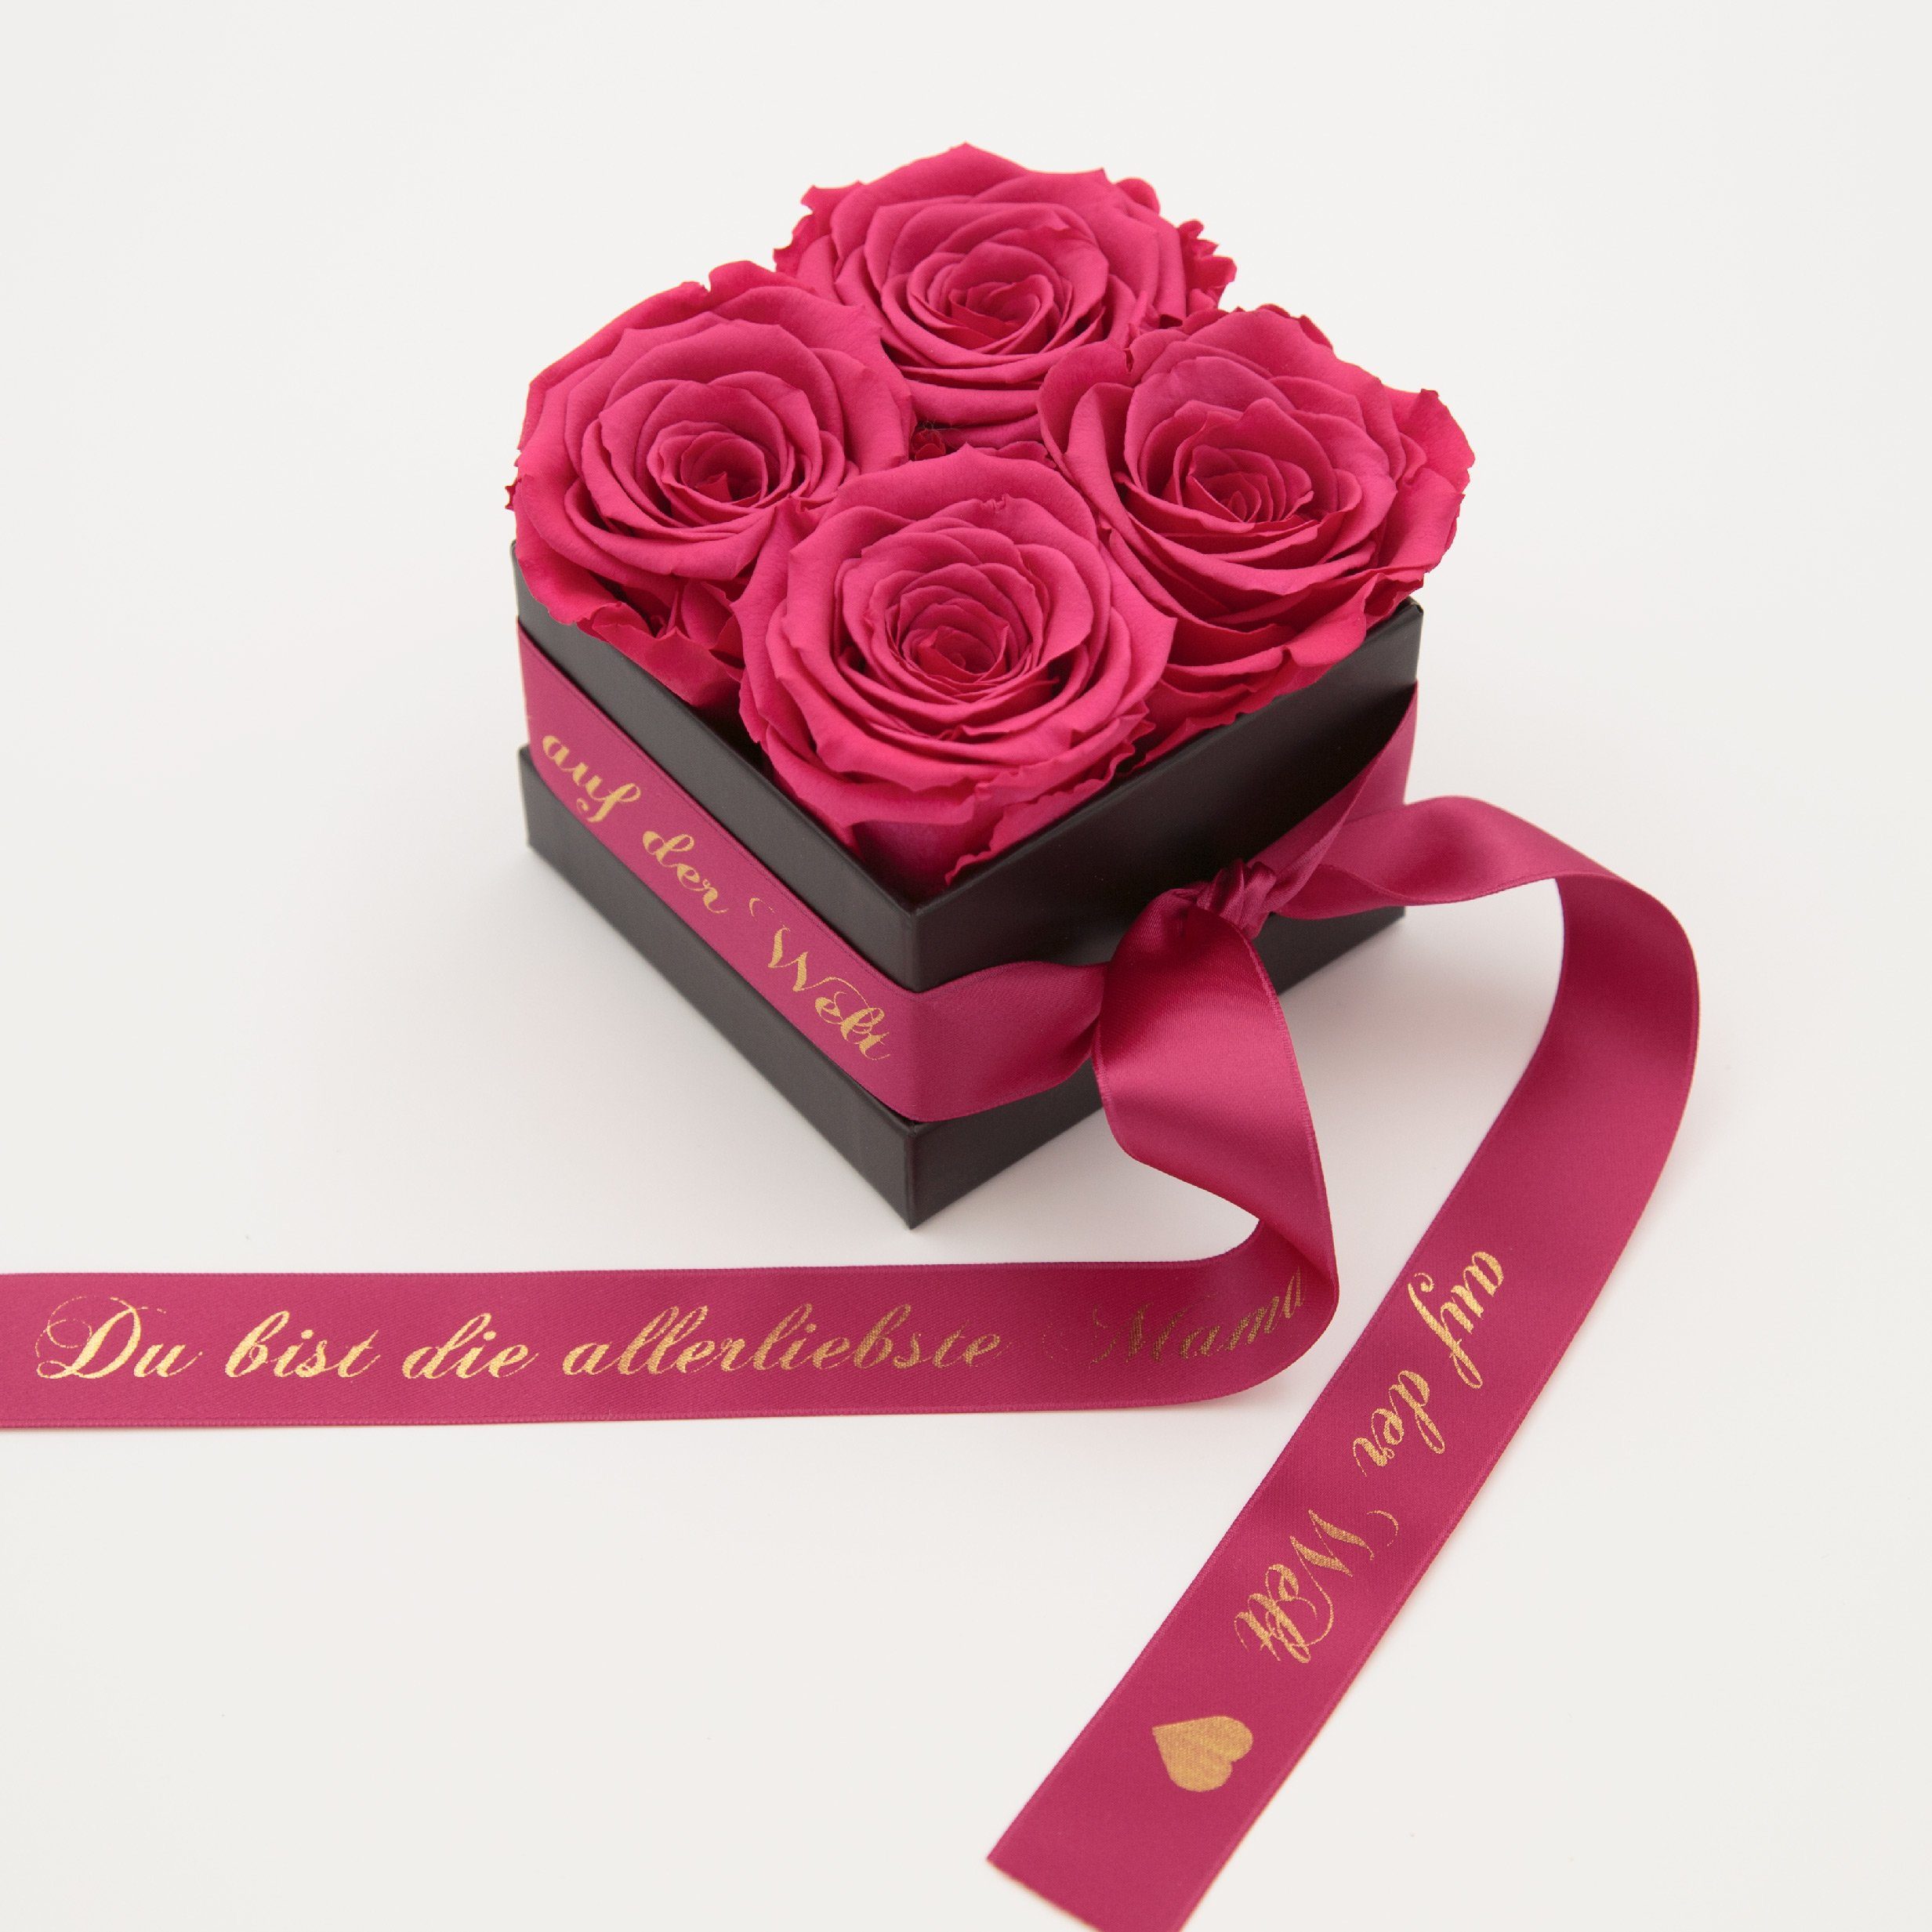 Kunstblume Allerliebste 4 ROSEMARIE Jahre der Rosen Pink cm, Rose, auf Rosen 3 konservierte Höhe Welt Geschenk haltbar Heidelberg, Rosenbox Echte SCHULZ 8,5 Mama